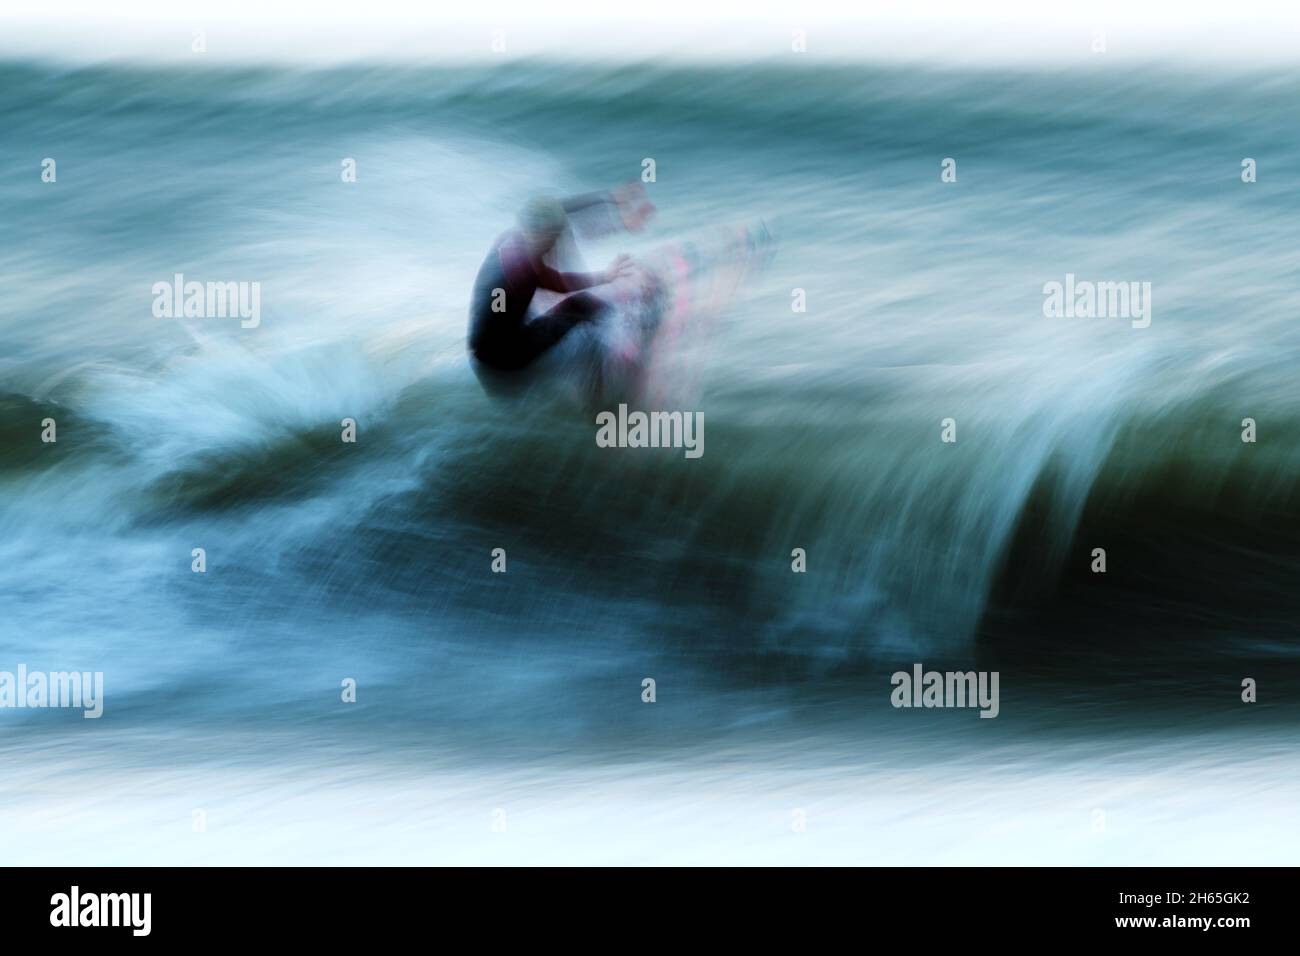 Zeitraffer bei den Stürzen einer Welle, die Bewegung des Surfers gefangen in diesem Fine Art Speed Foto Stockfoto